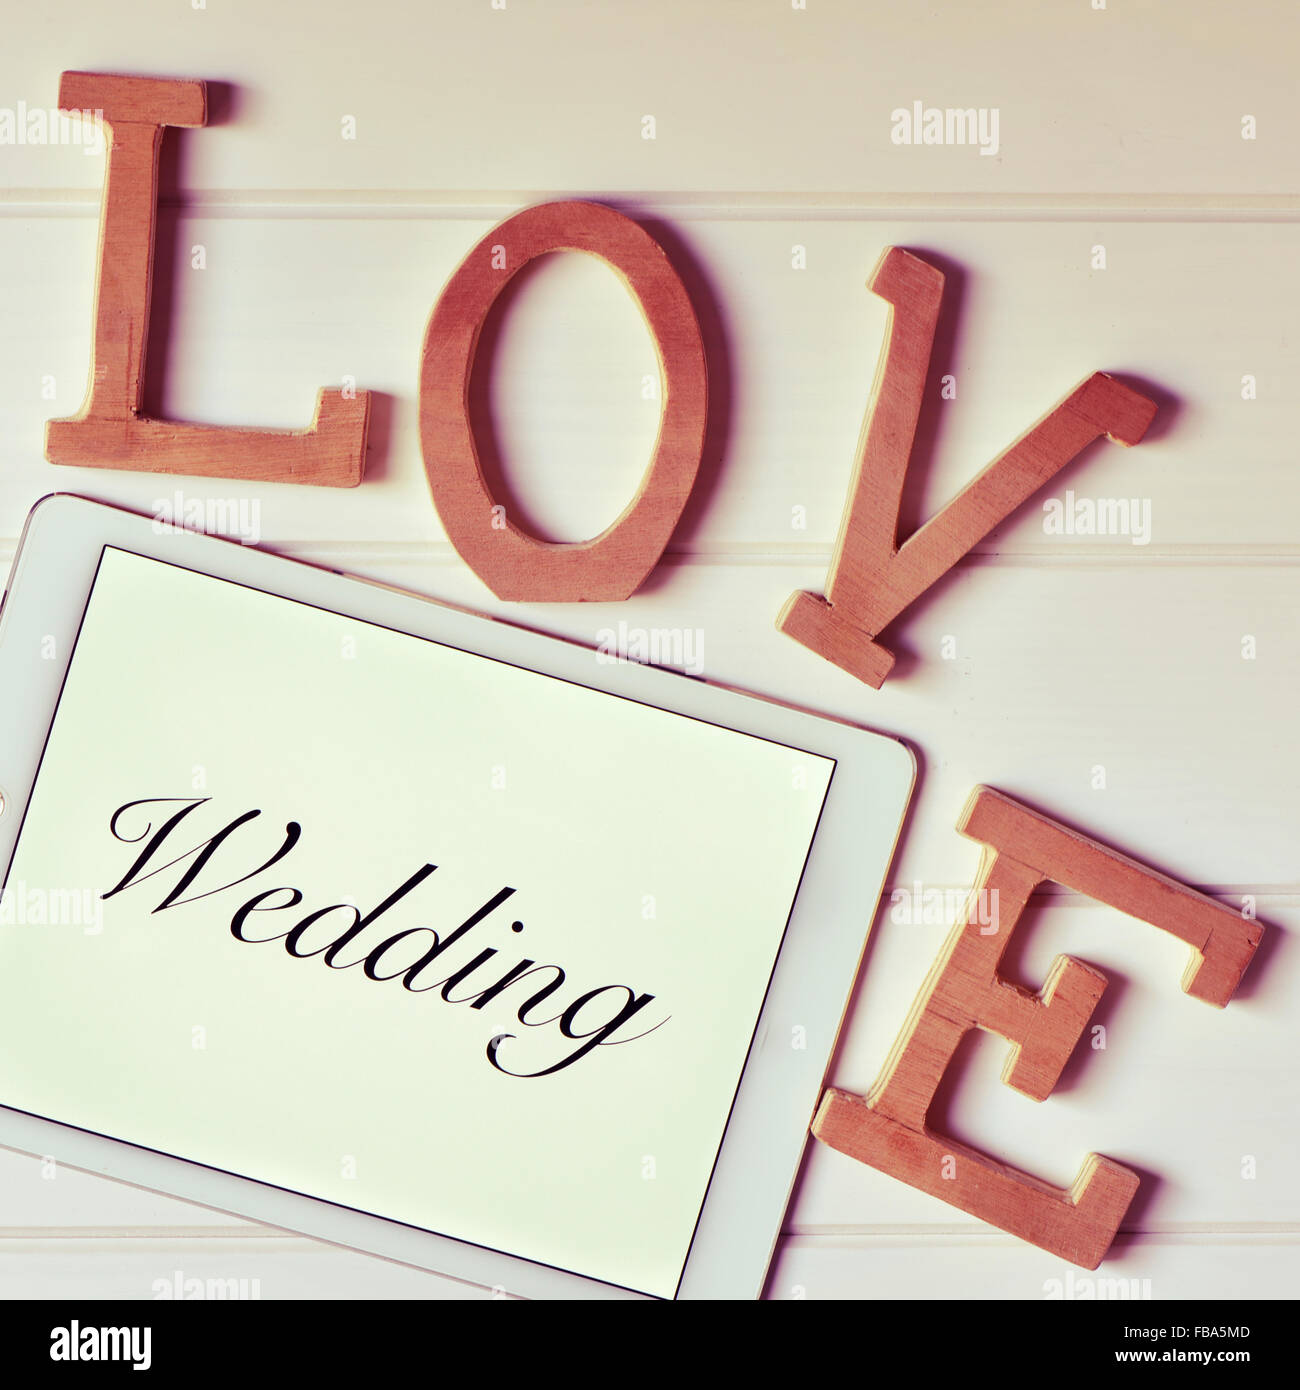 einige hölzerne dreidimensionale Buchstaben bilden das Wort Liebe und ein Tablet-Computer mit dem Wort Hochzeit in seinem Bildschirm auf einem weißen Stockfoto